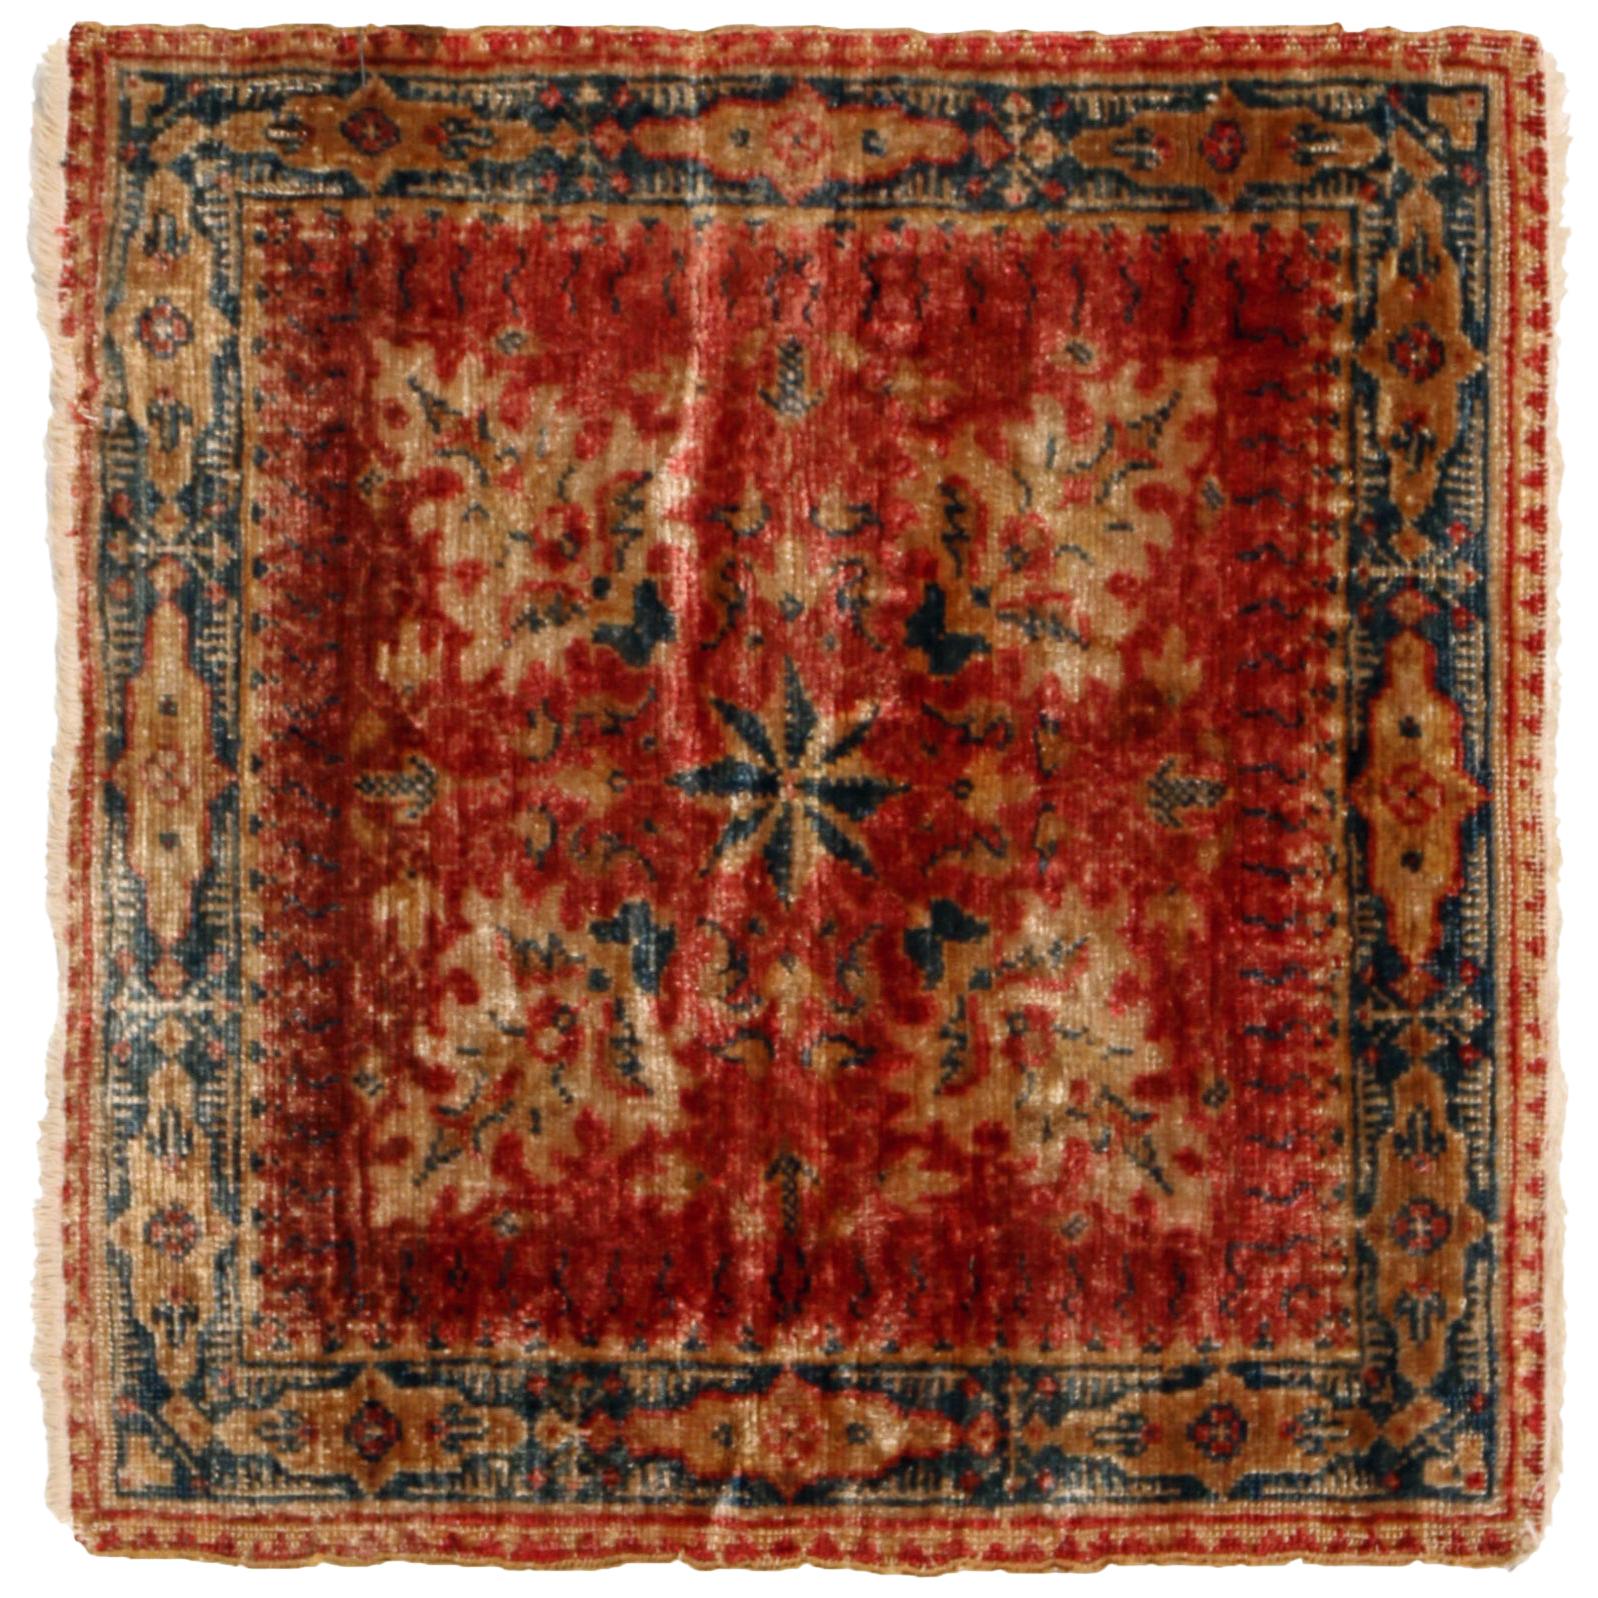 Antique Hereke Red Beige Silk Square Rug Motifs Floral Pattern by Rug & Kilim